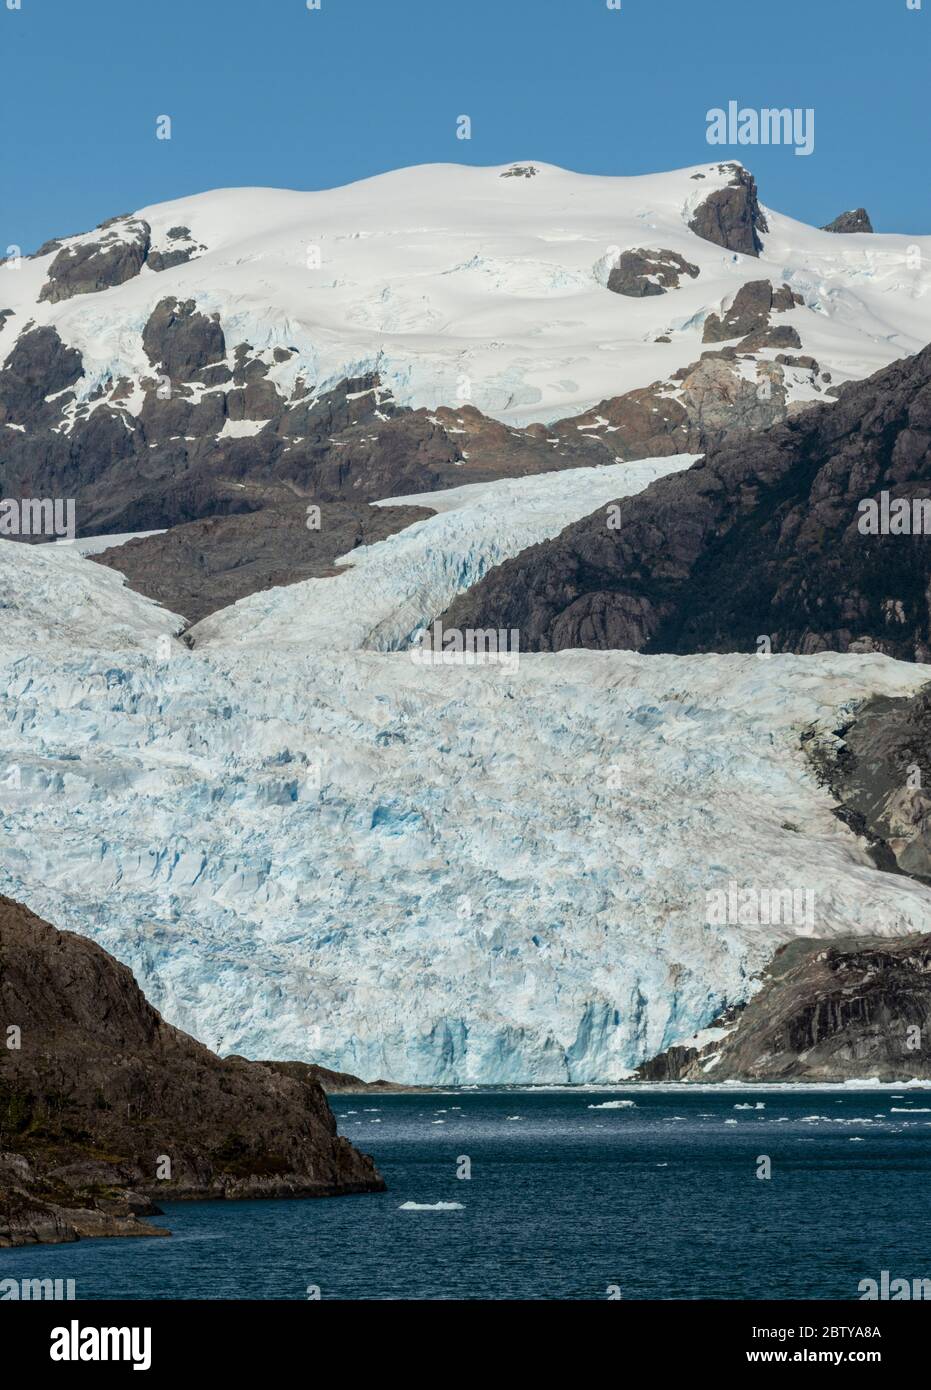 Asie Fjord et Brujo Glacier, Fjords chiliens, Chili, Amérique du Sud Banque D'Images